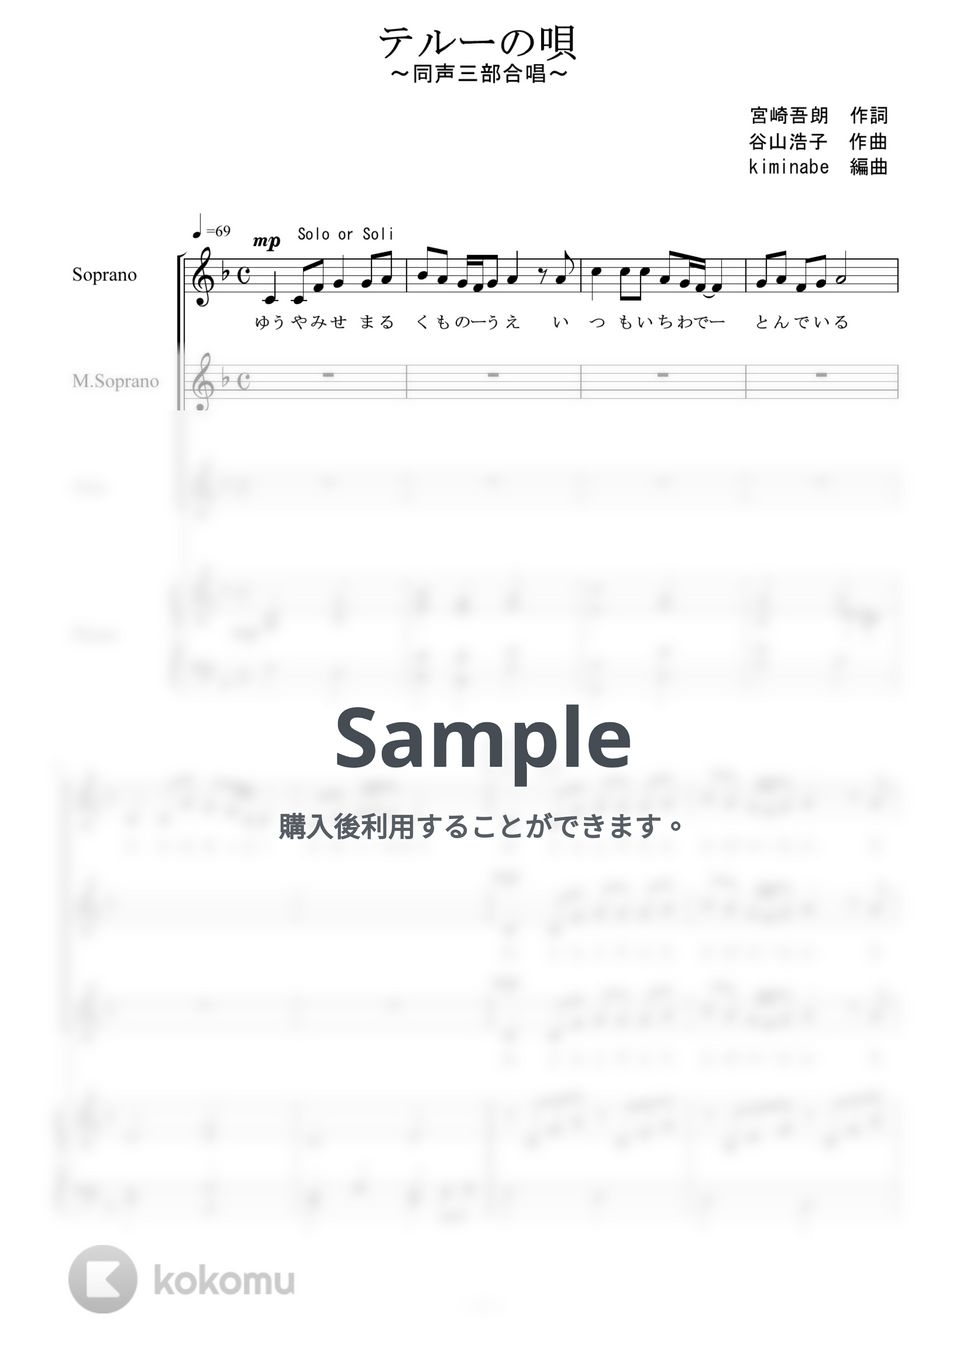 ゲド戦記 - テルーの唄 (同声三部合唱) by kiminabe